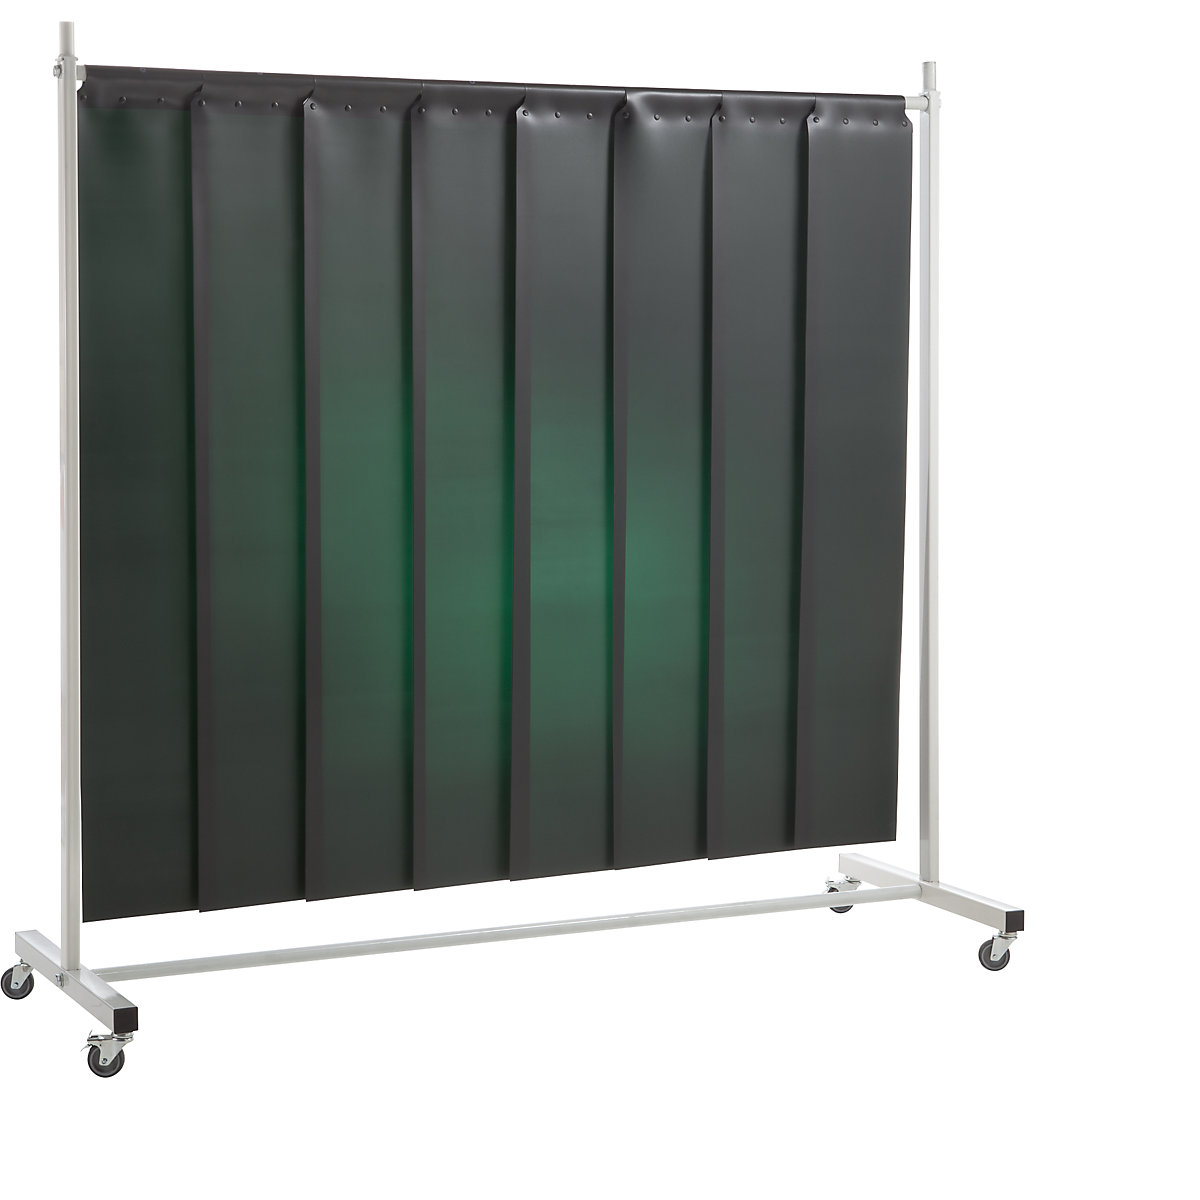 Schweißer-Schutzwand, mobil, mit Lamellenvorhang, dunkelgrün, BxH 2100 x 2100 mm, 1-teilig